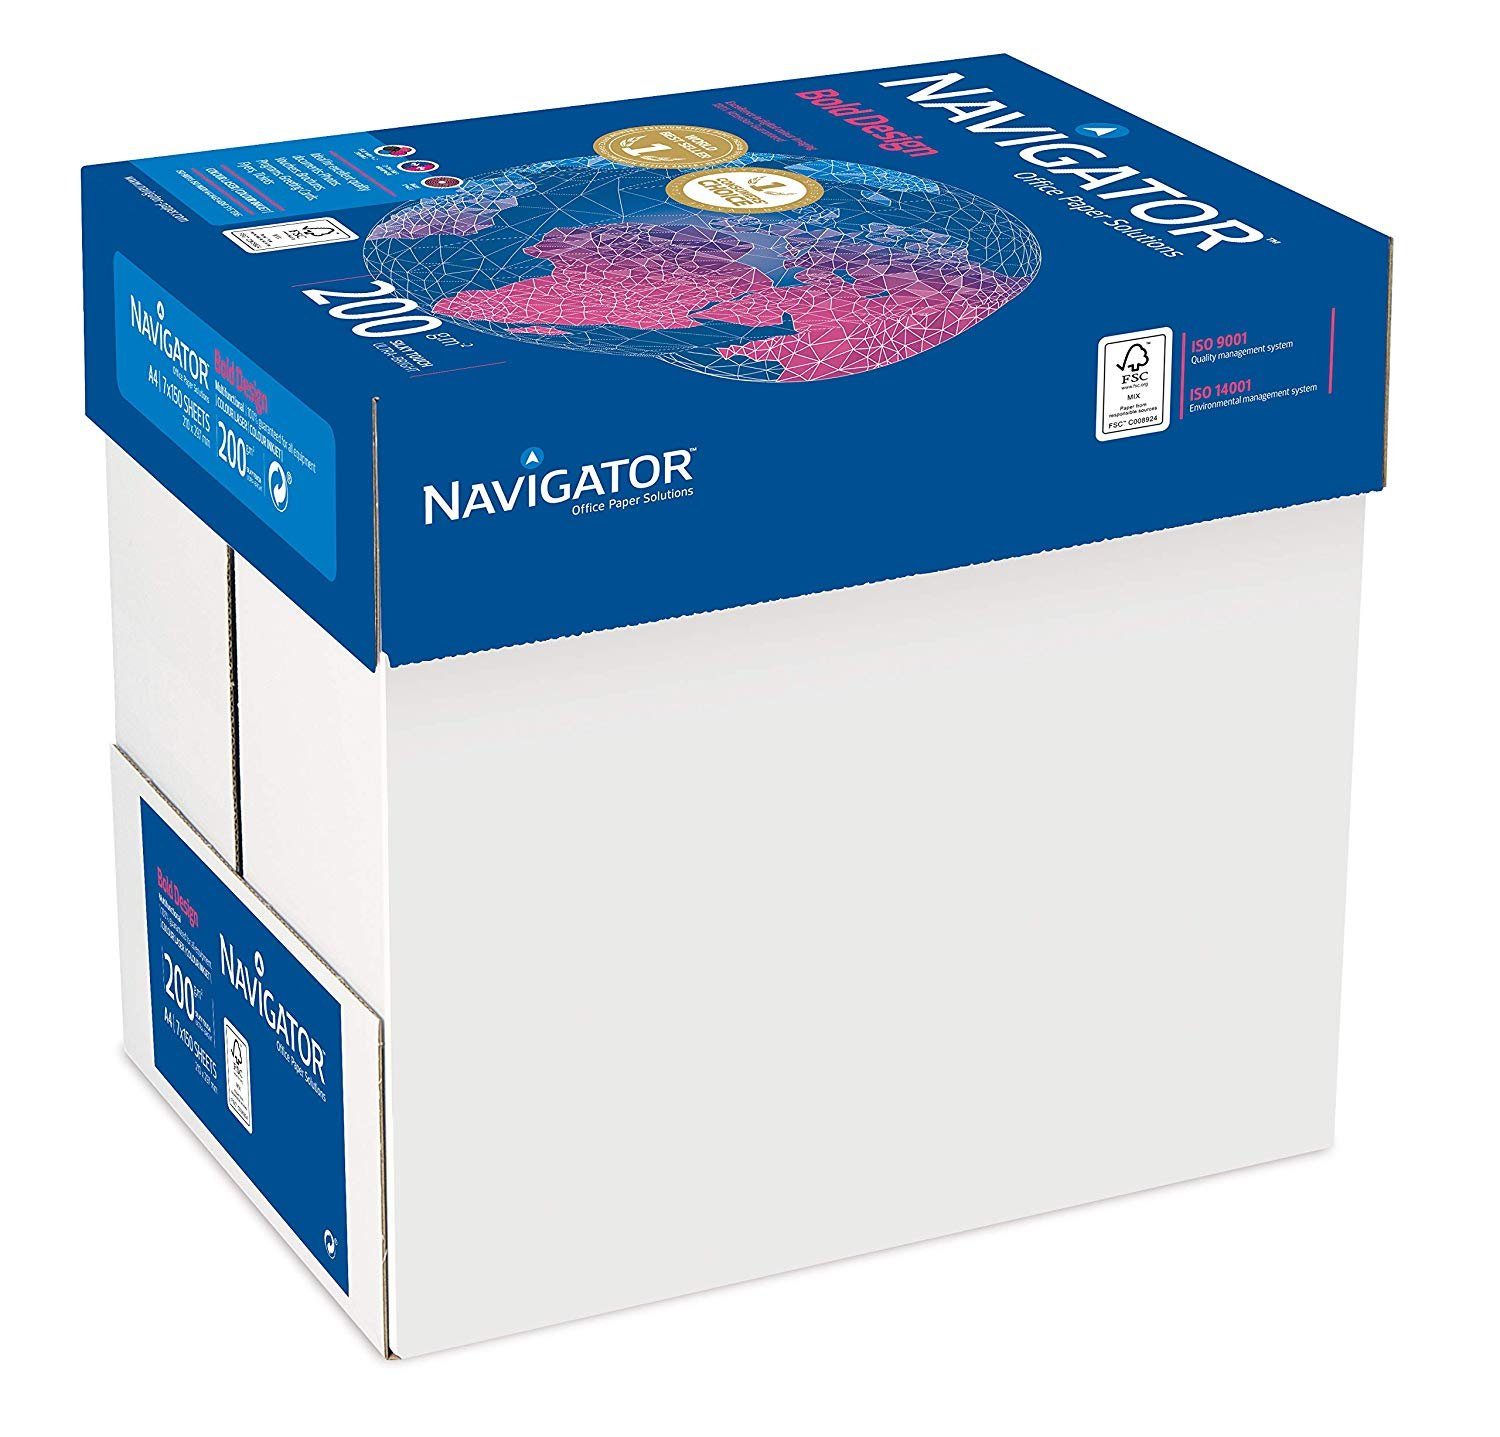 200g/m² NAVIGATOR weiß Kopierpapier und Kopierpapier Navigator Bold Design Blatt Drucker- DIN-A4 1050